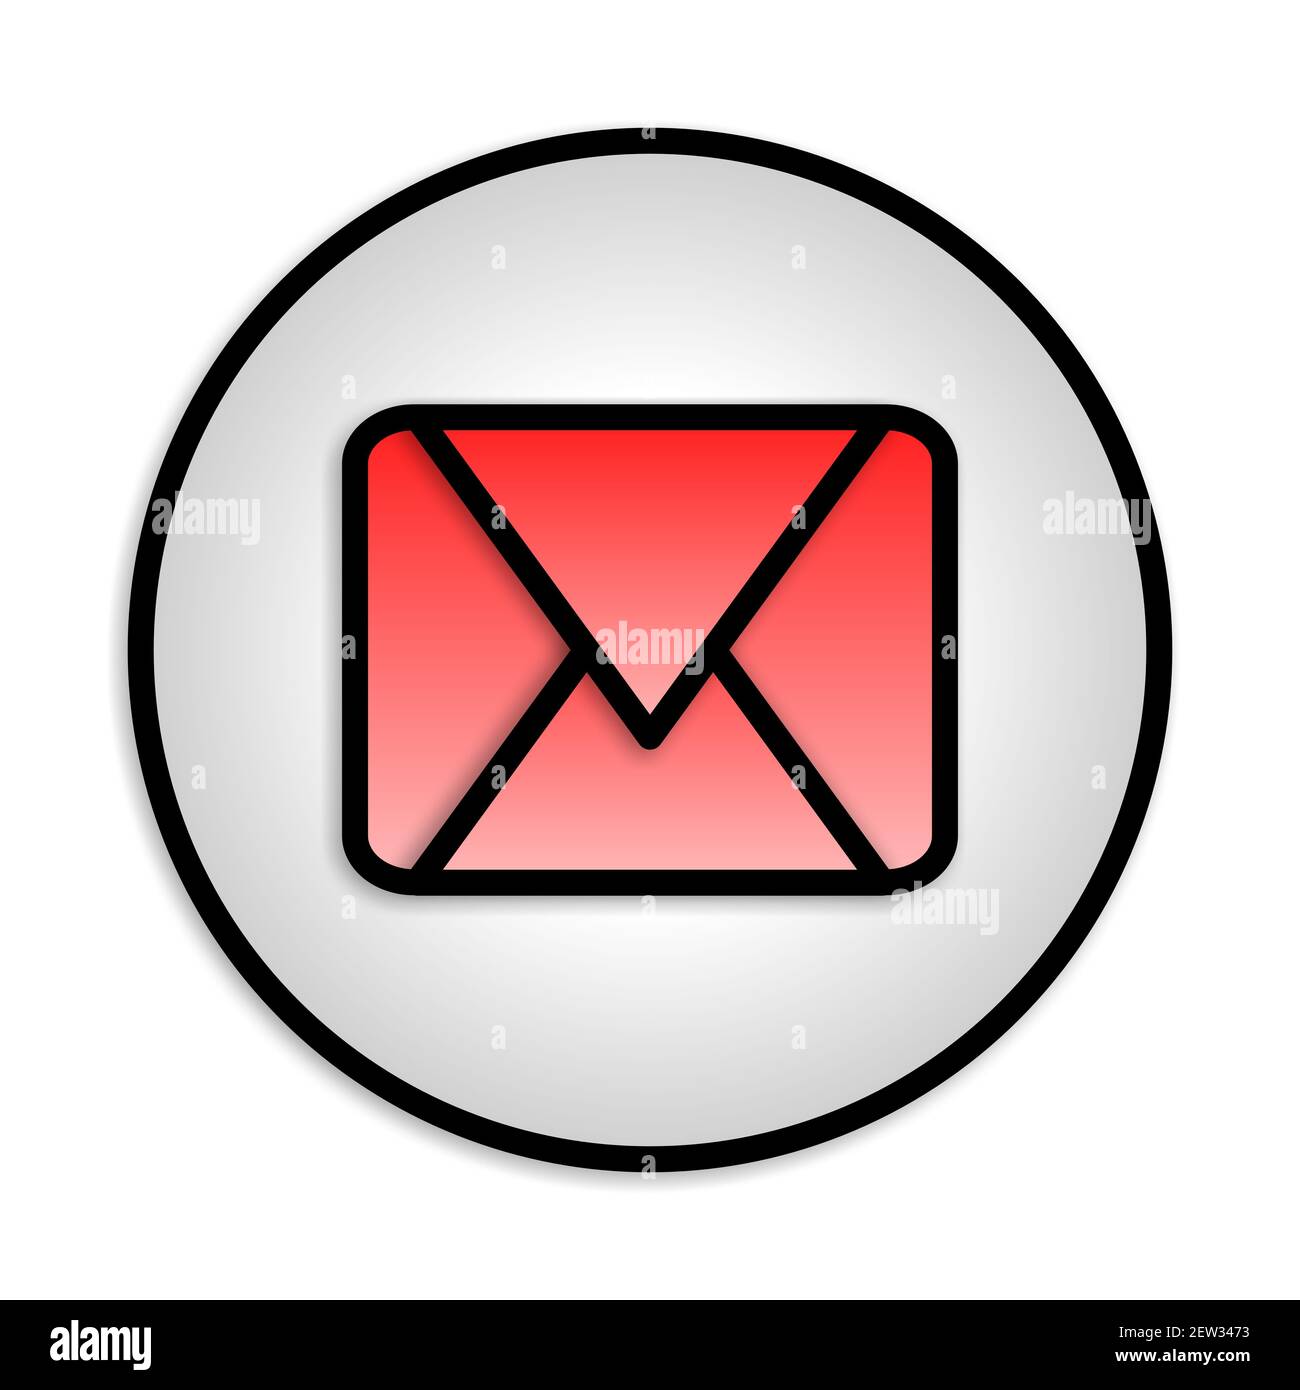 Biểu tượng email đơn giản tròn đầy tinh tế sẽ khiến bạn không thể rời mắt. Được thiết kế đơn giản và dễ nhìn, bạn sẽ không phải băn khoăn hay tốn nhiều thời gian để tìm kiếm chức năng mình cần dễ dàng trao đổi và liên lạc. Hãy cùng đón xem!